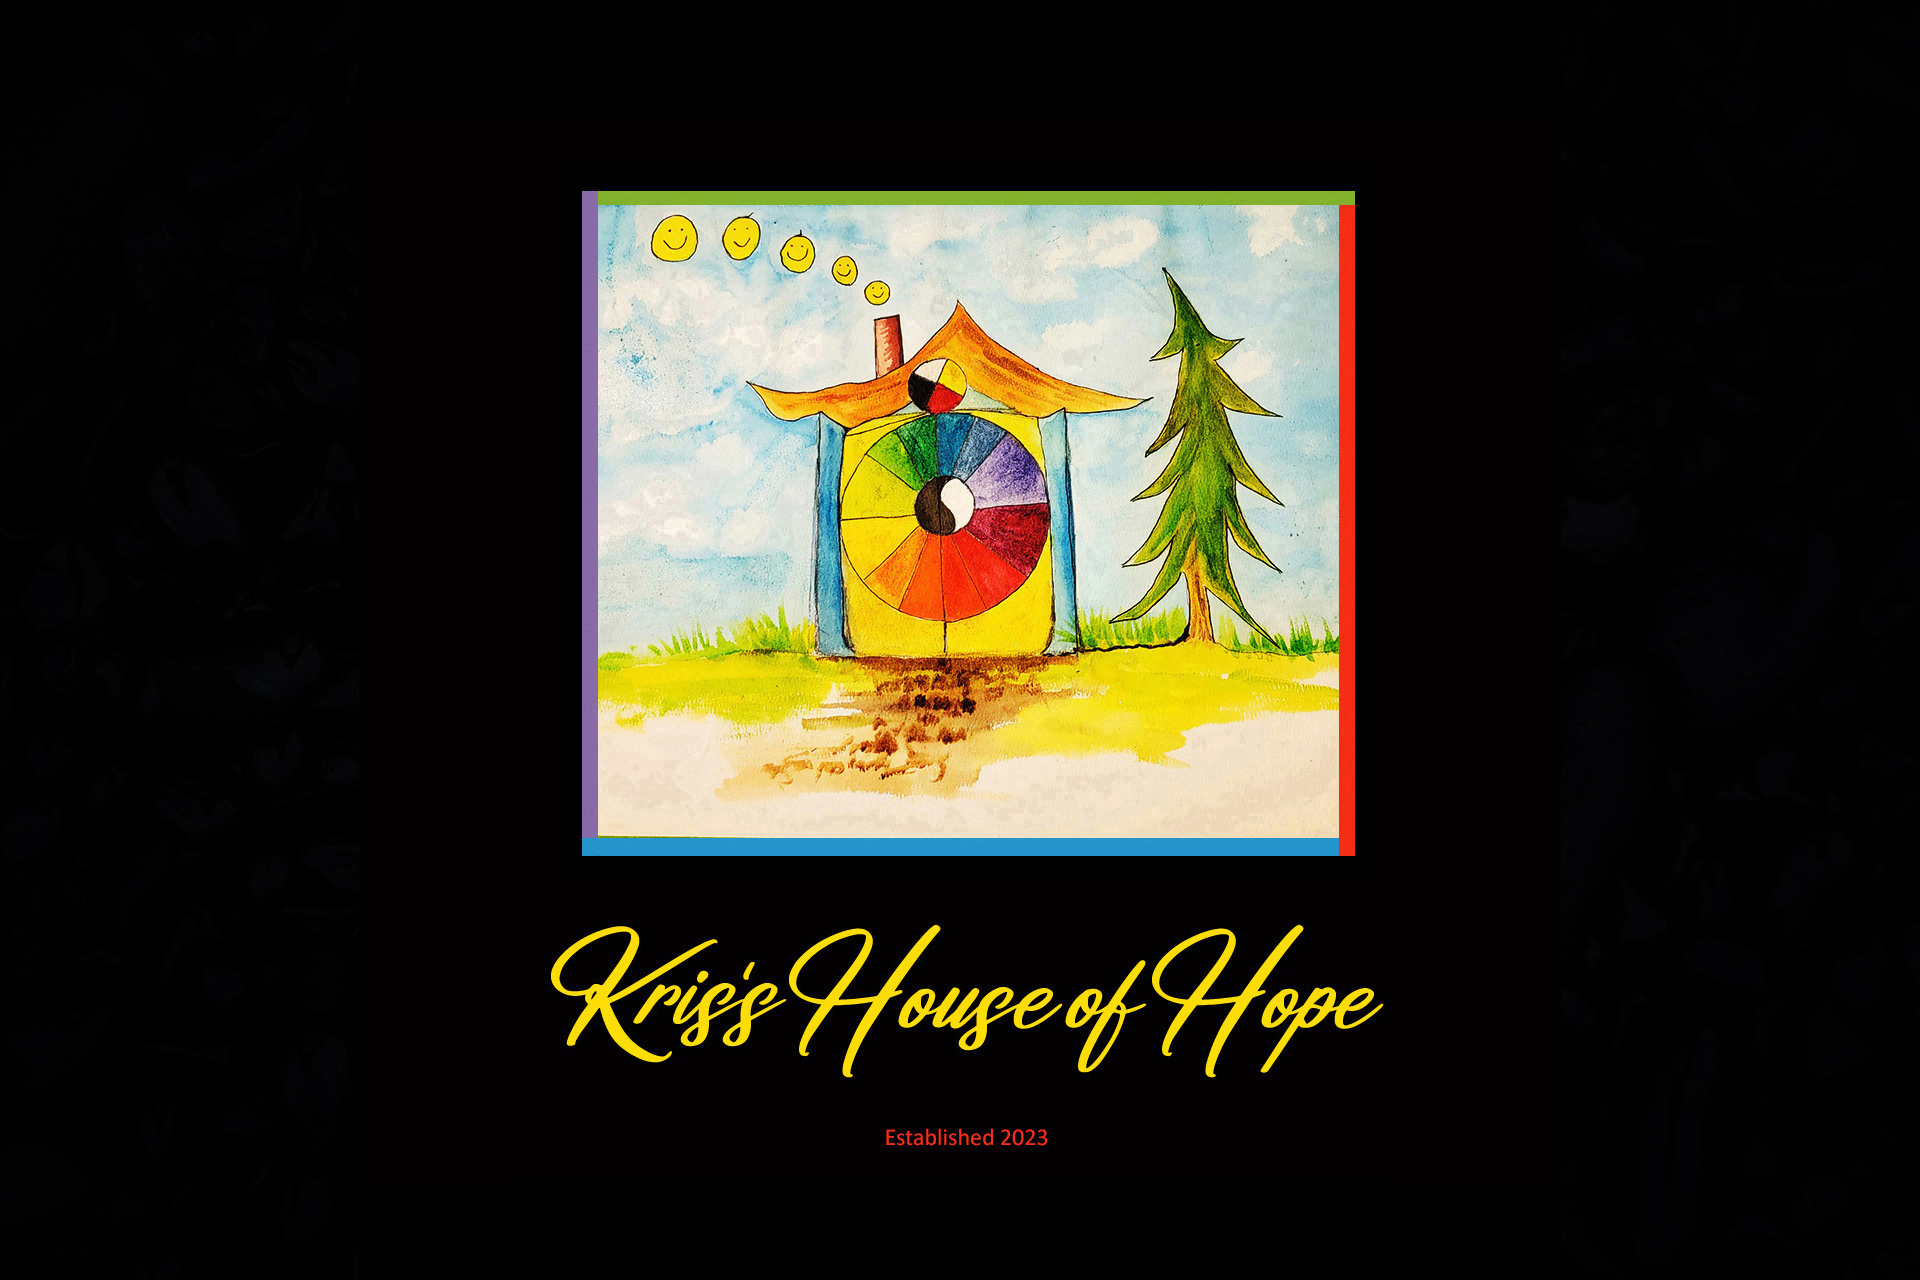 Coming Soon - Kris's House Of Hope'